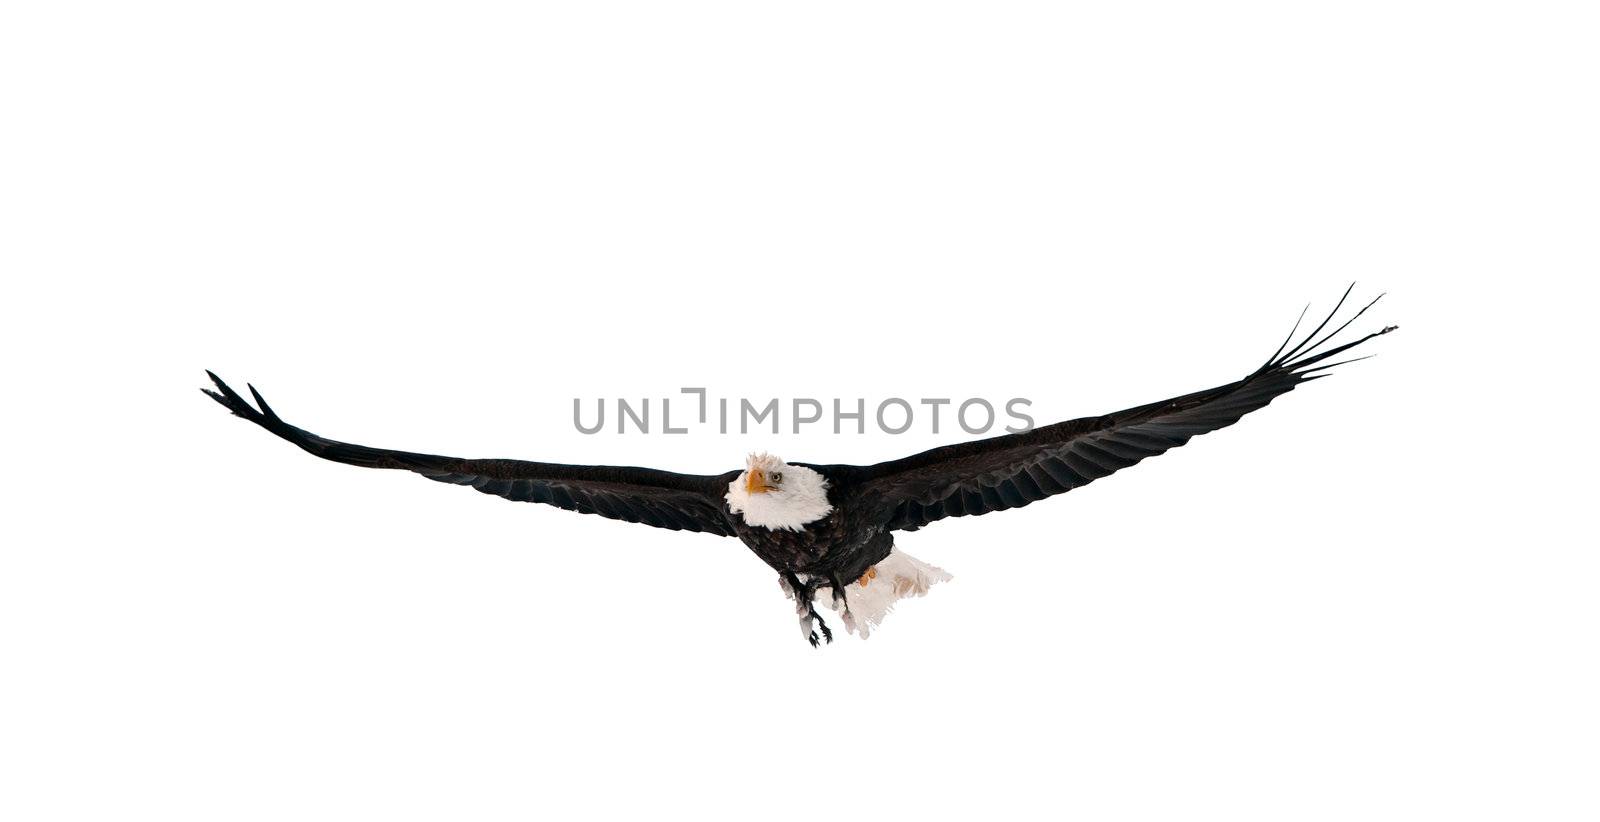 Flying Bald Eagle (Haliaeetus leucocephalus washingtoniensis). Isolated on white